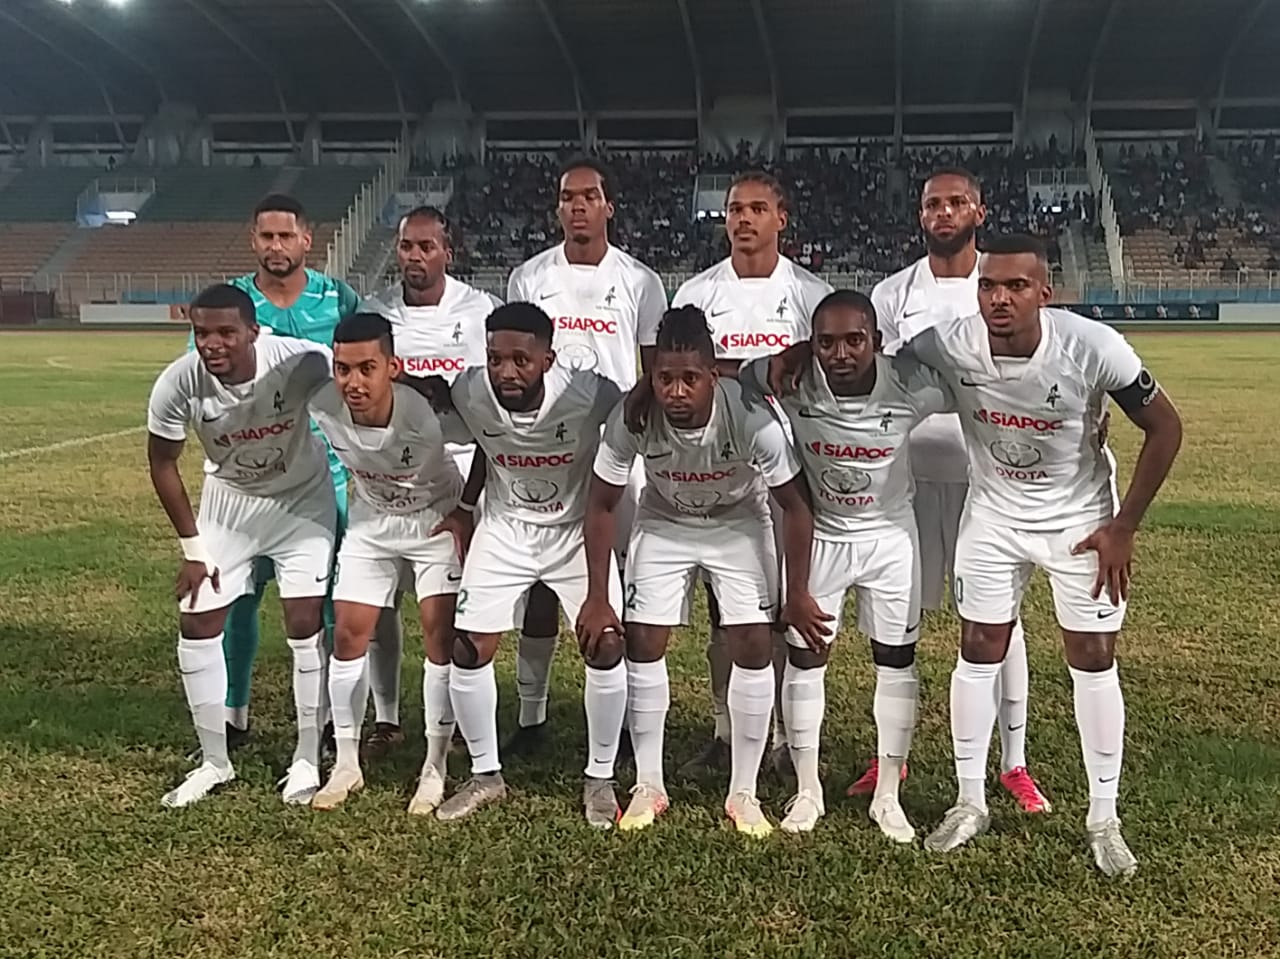     Football : le Club franciscain remporte la Coupe de Martinique 

